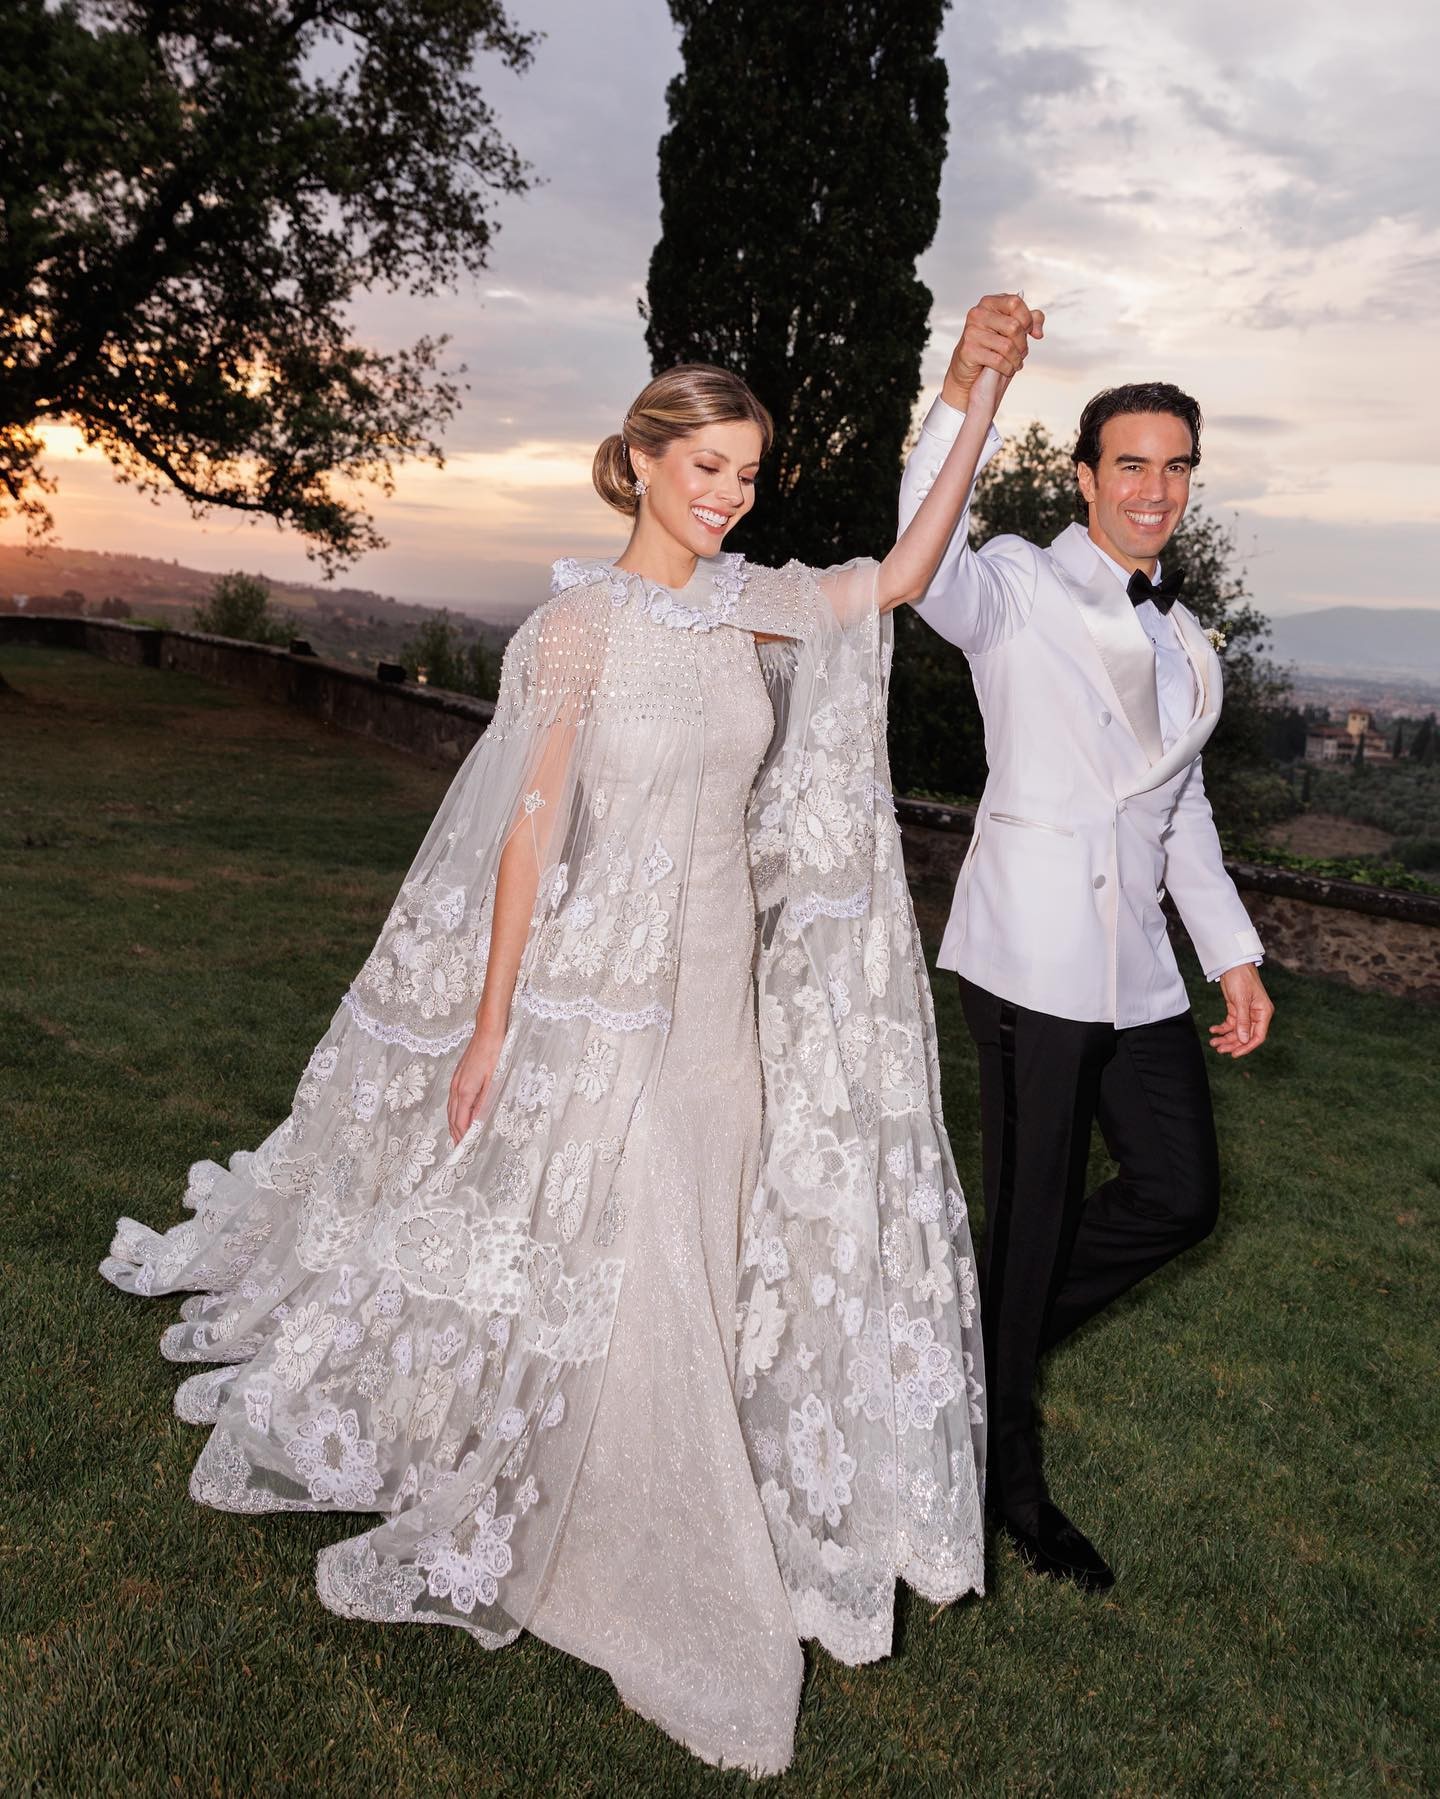 Lala Trussardi Rudge se casa com Bruno Khouri em Firenze, na Itália; saiba todos os detalhes (Foto: @germanlarkin)